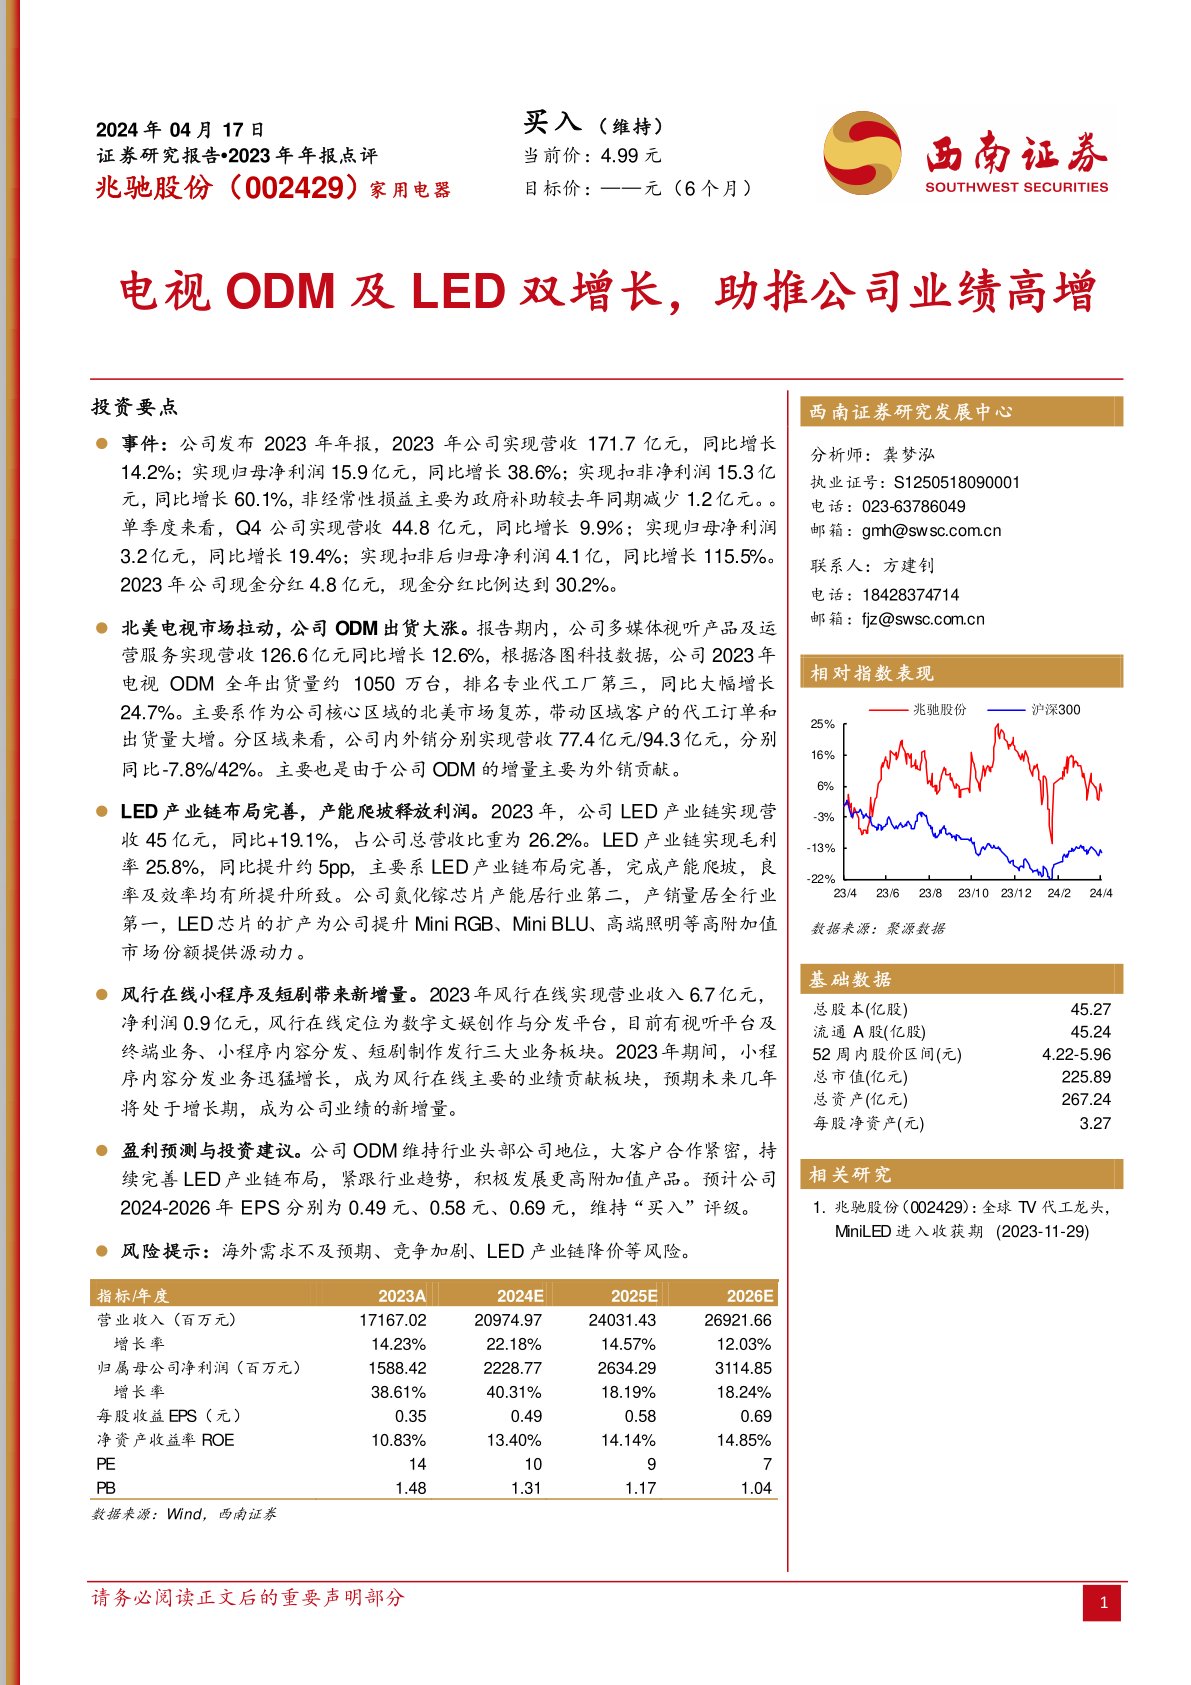 2023年年报点评：电视ODM及LED双增长，助推公司业绩高增